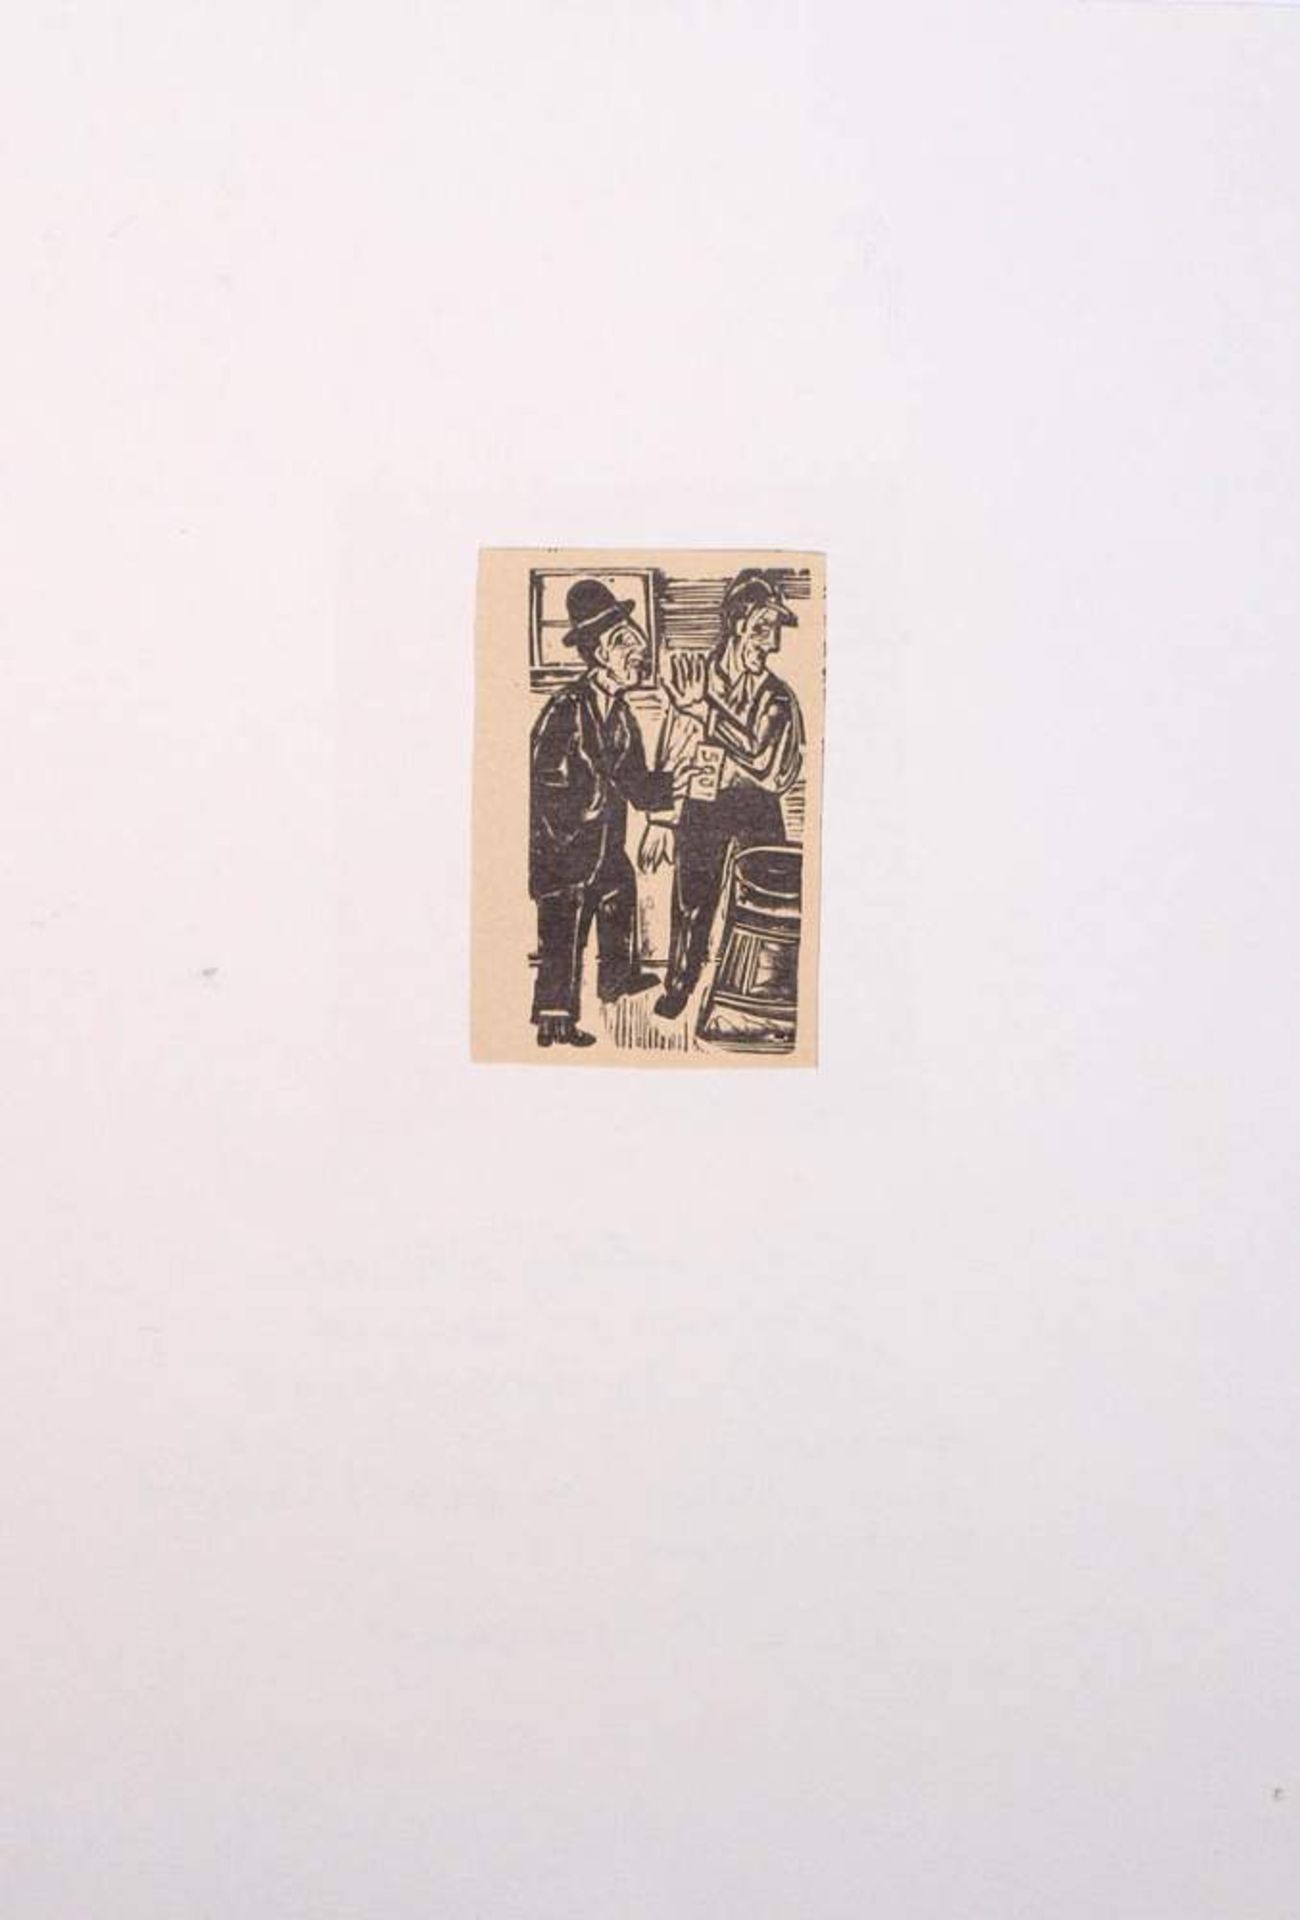 Kirchner, Ernst Ludwig, 1880 - 1938Holzschnitt, bet. "Die Bestechung" aus "Neben der Heerstraße". - Bild 2 aus 3